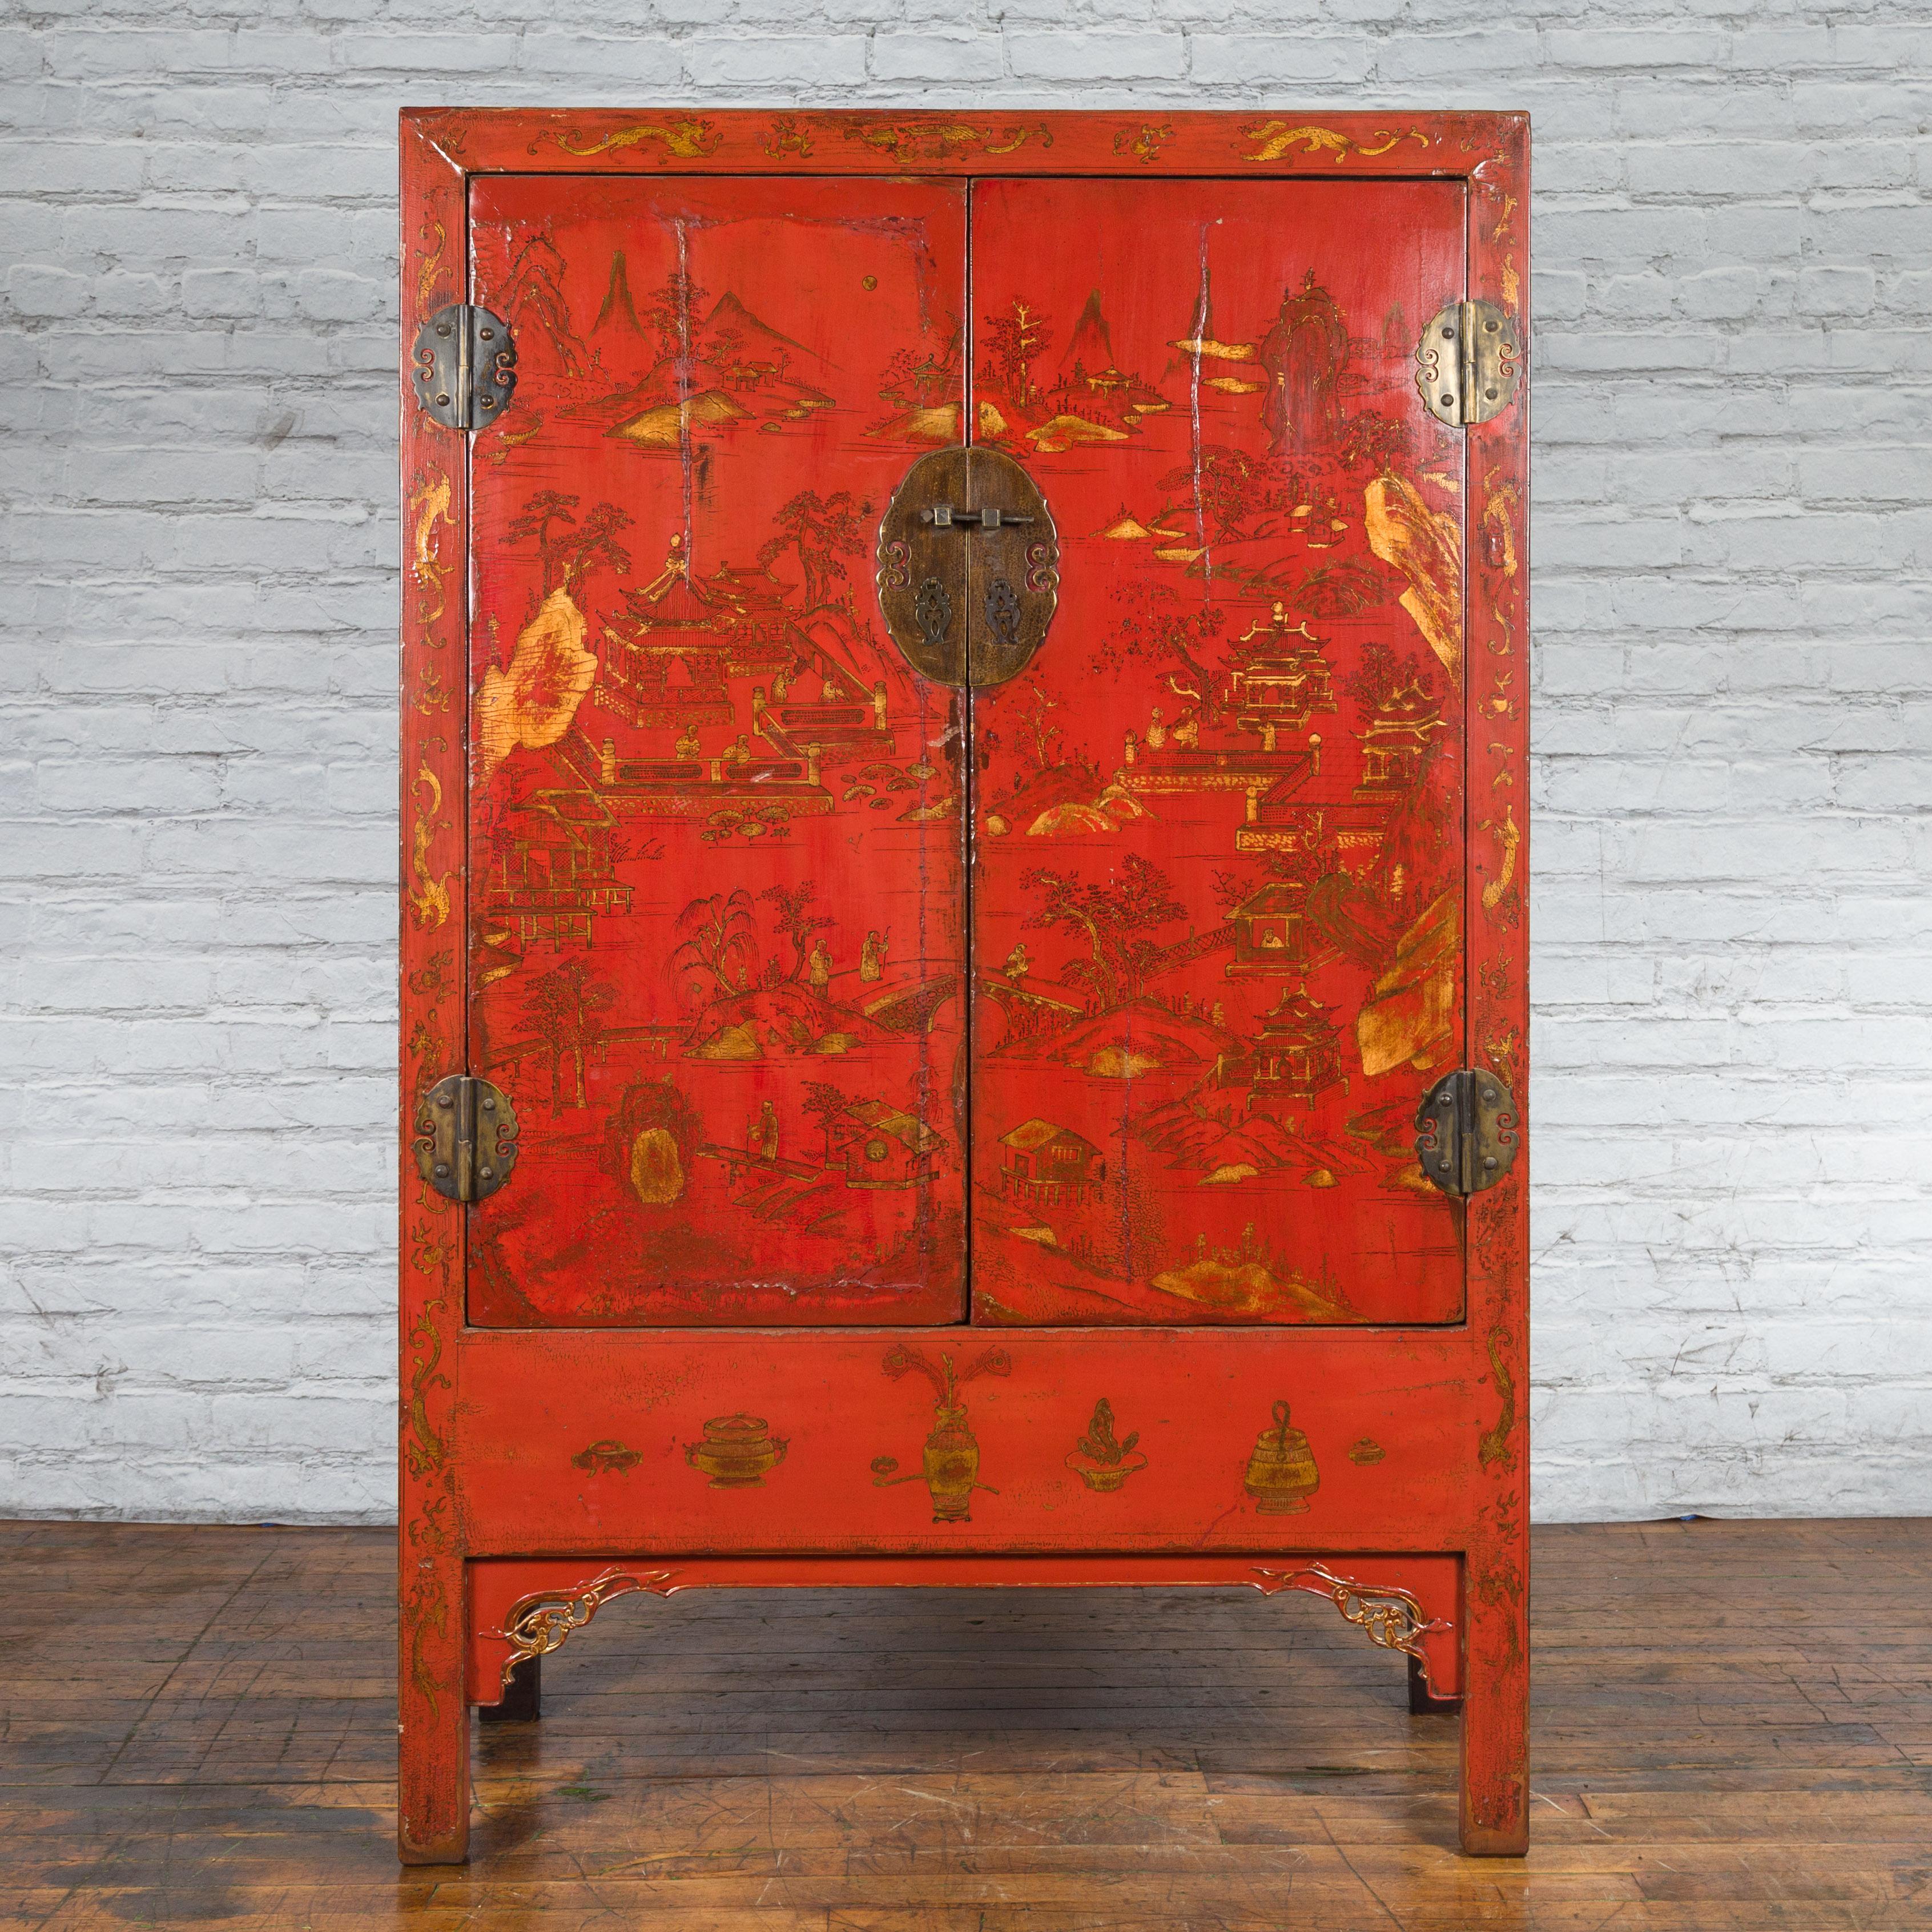 Ein chinesischer Schrank aus der Qing-Dynastie aus dem 19. Jahrhundert mit originalem rotem Lack und vergoldetem, handgemaltem Hofdekor. Dieses Kabinett, das im 19. Jahrhundert in China während der Qing-Dynastie geschaffen wurde, zeichnet sich durch